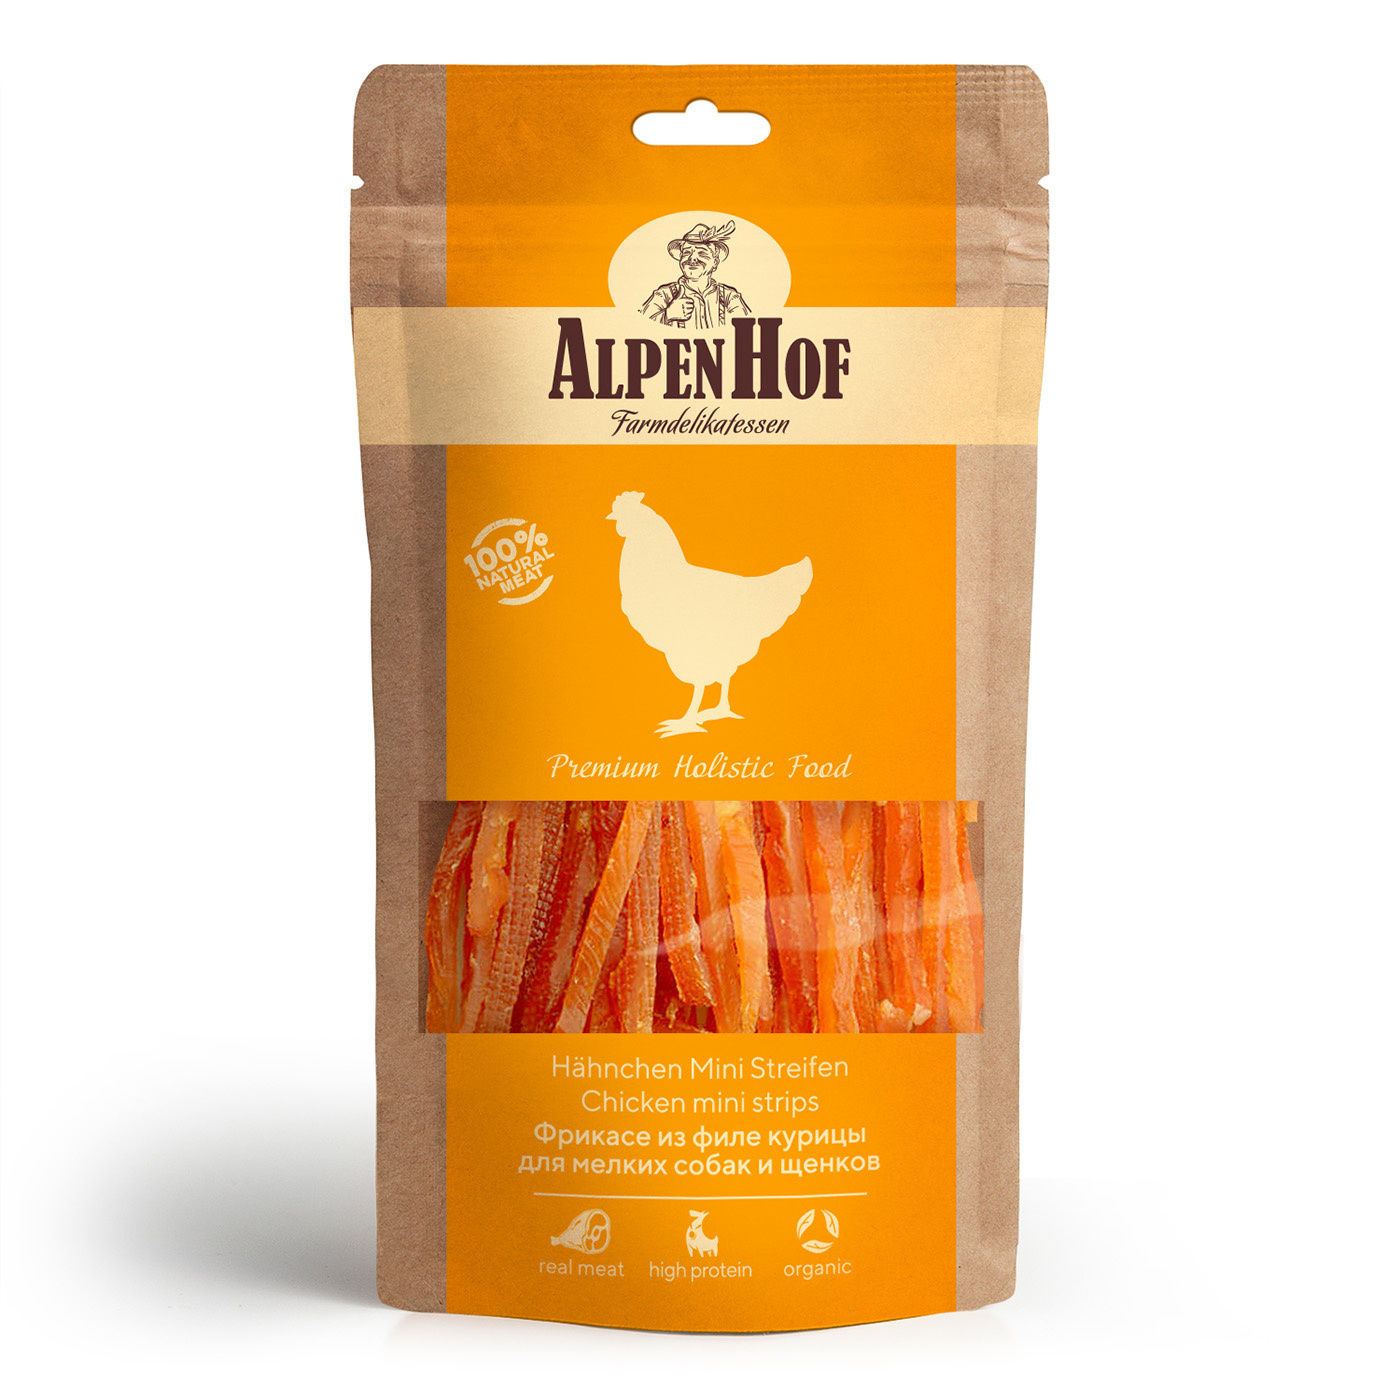 AlpenHof AlpenHof лакомство Фрикасе из филе курицы для мелких собак и щенков (65 г)